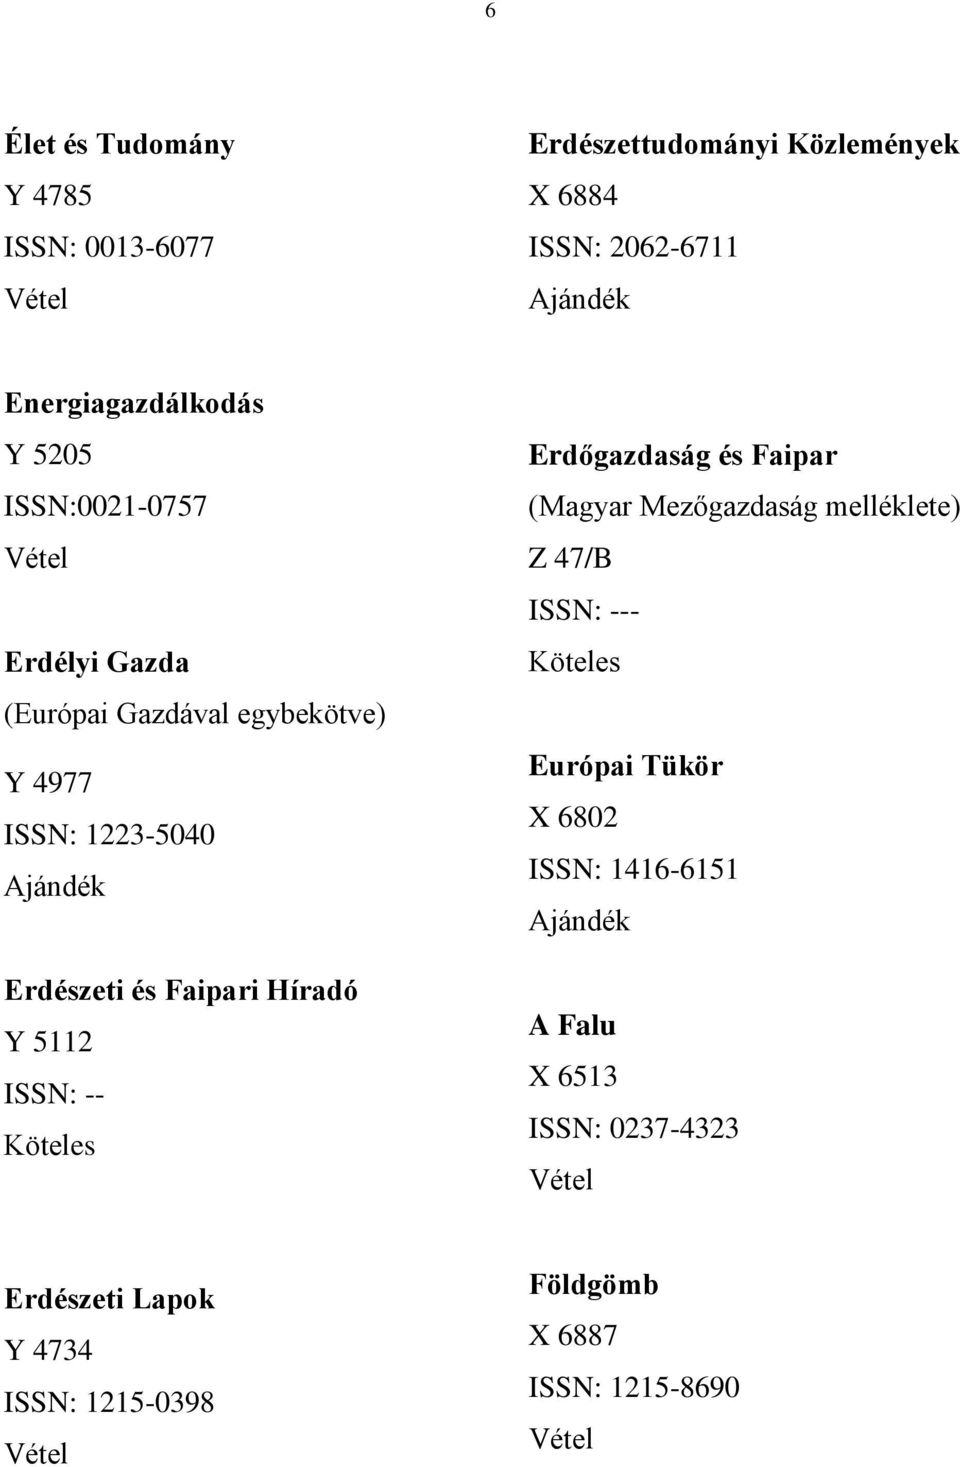 Híradó Y 5112 ISSN: -- Erdőgazdaság és Faipar (Magyar Mezőgazdaság melléklete) Z 47/B ISSN: --- Európai Tükör X